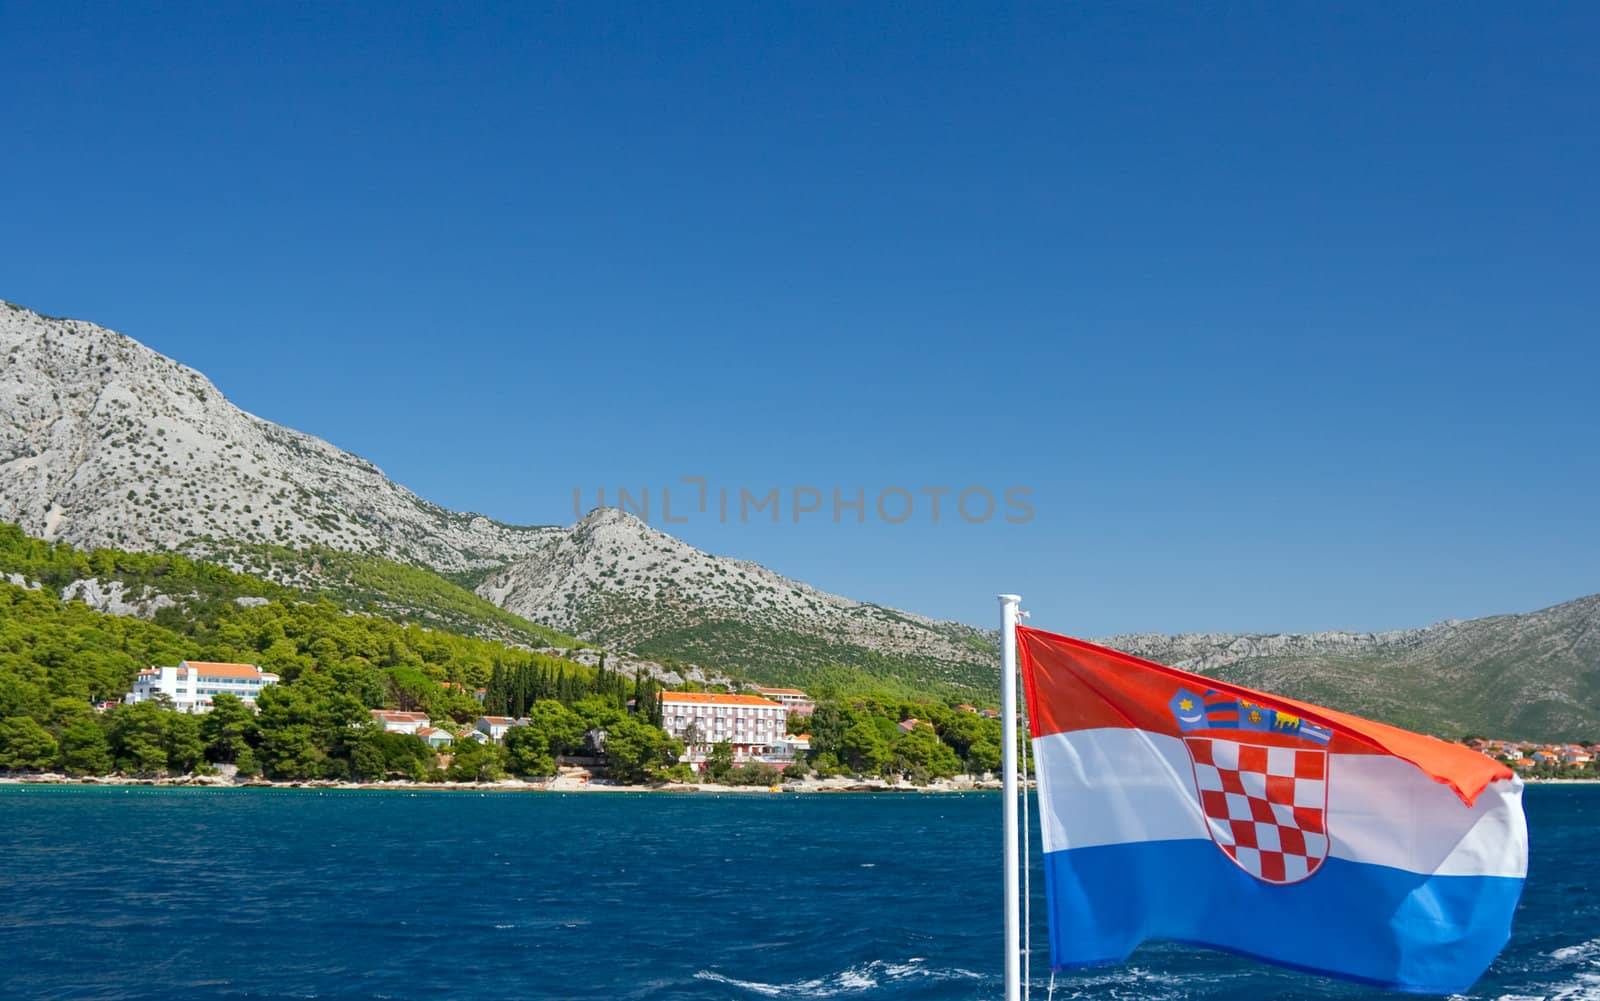 Postcard from Croatia by majeczka